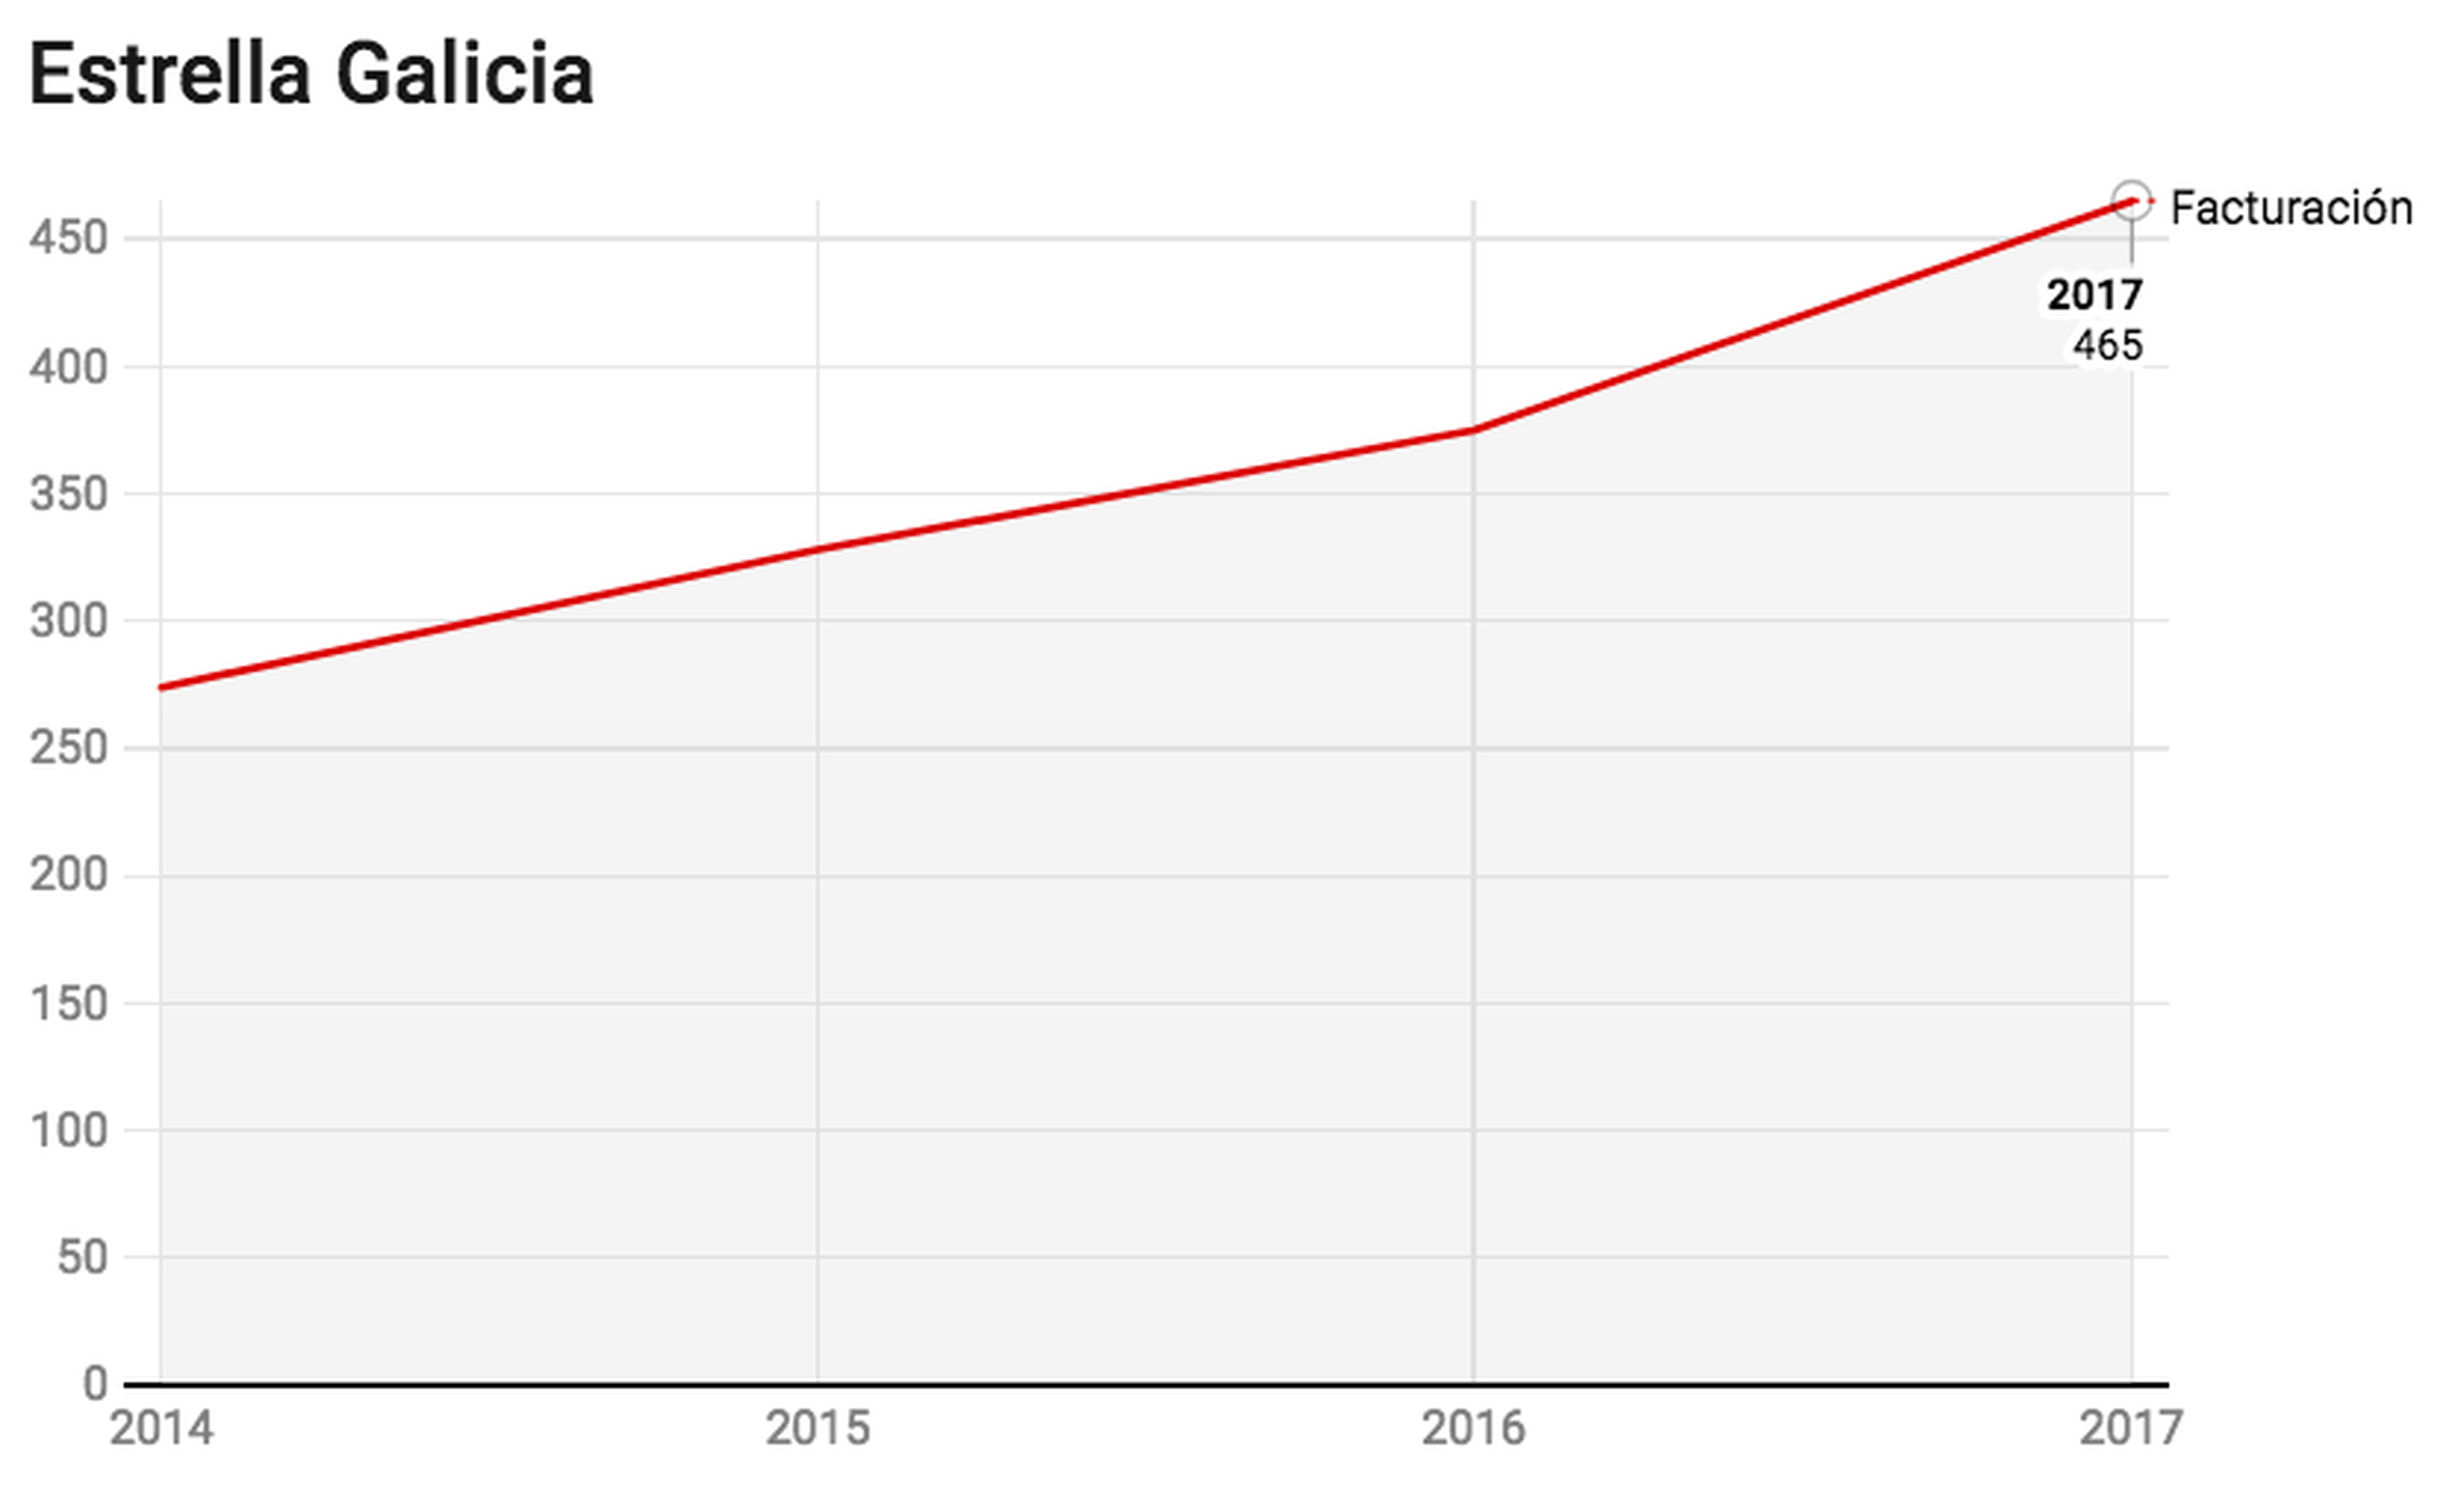 Evolución de la facturación de Estrella Galicia. Fuente: Registro Mercantil